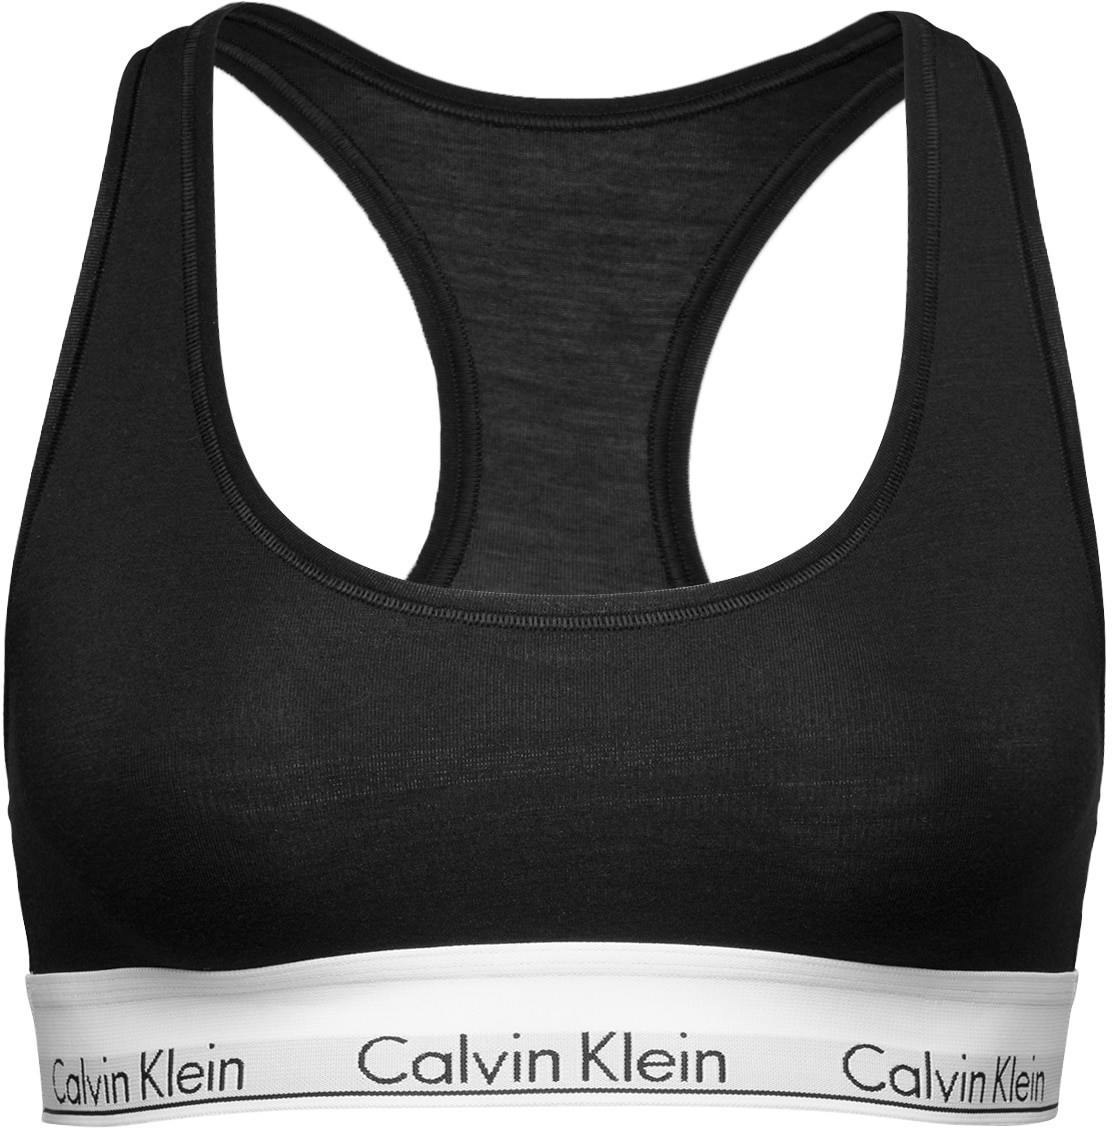 Bustier | Klein Cotton bei Calvin Modern € 16,99 schwarz Preisvergleich ab